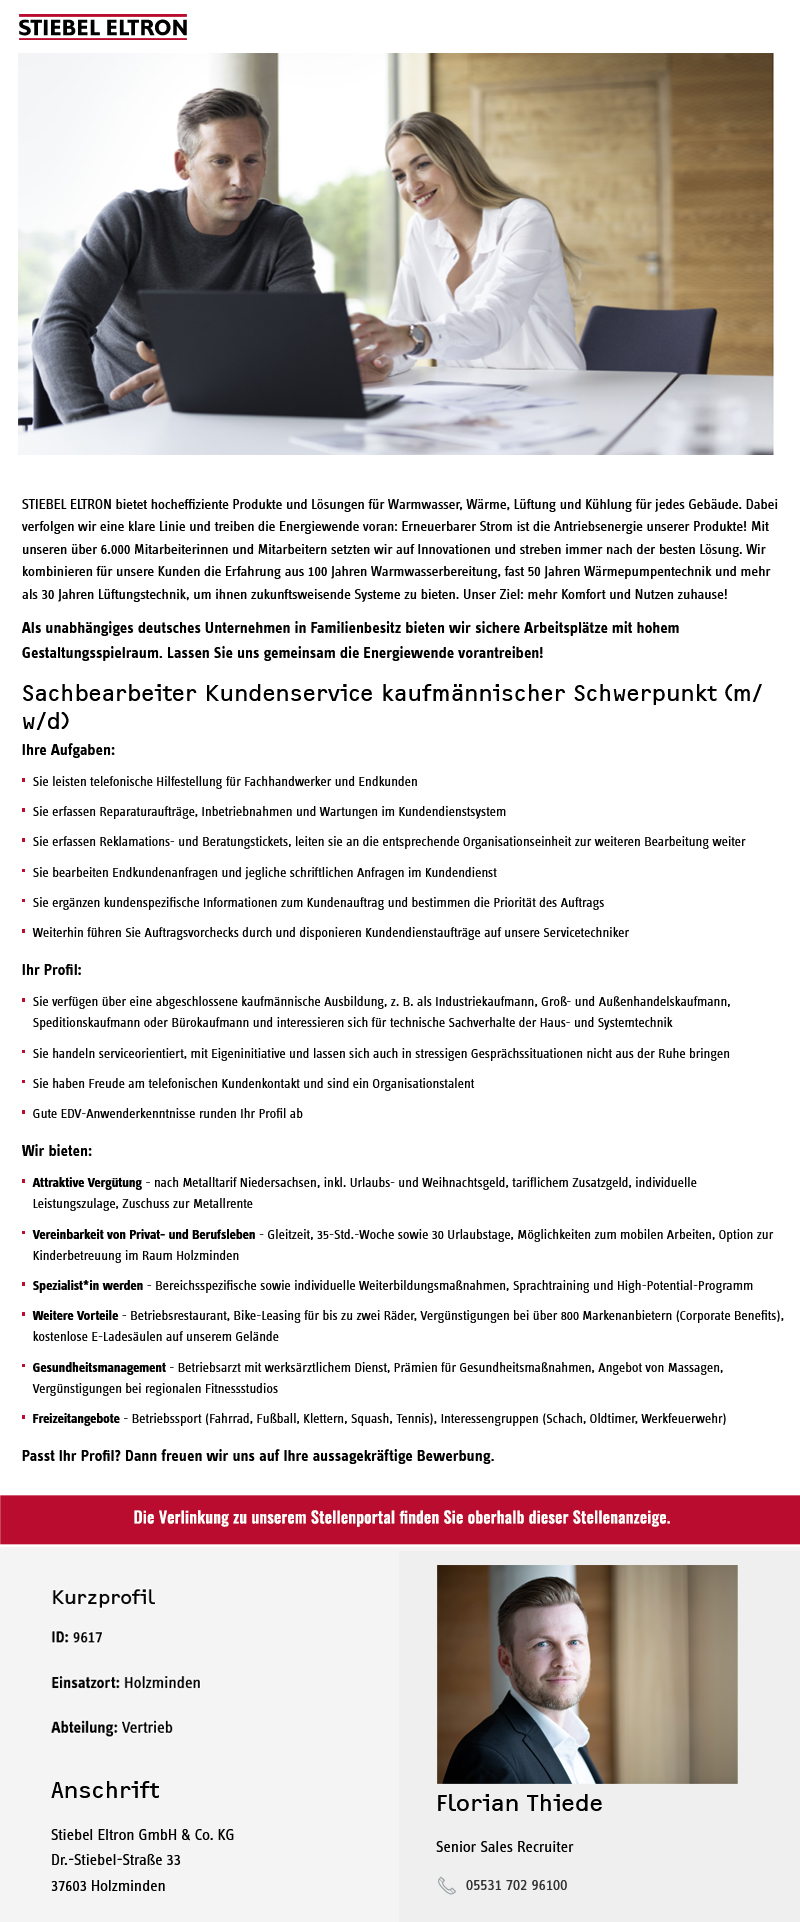 Sachbearbeiter Kundenservice kaufmännischer Schwerpunkt (m/w/d) - Stiebel Eltron GmbH & Co. KG